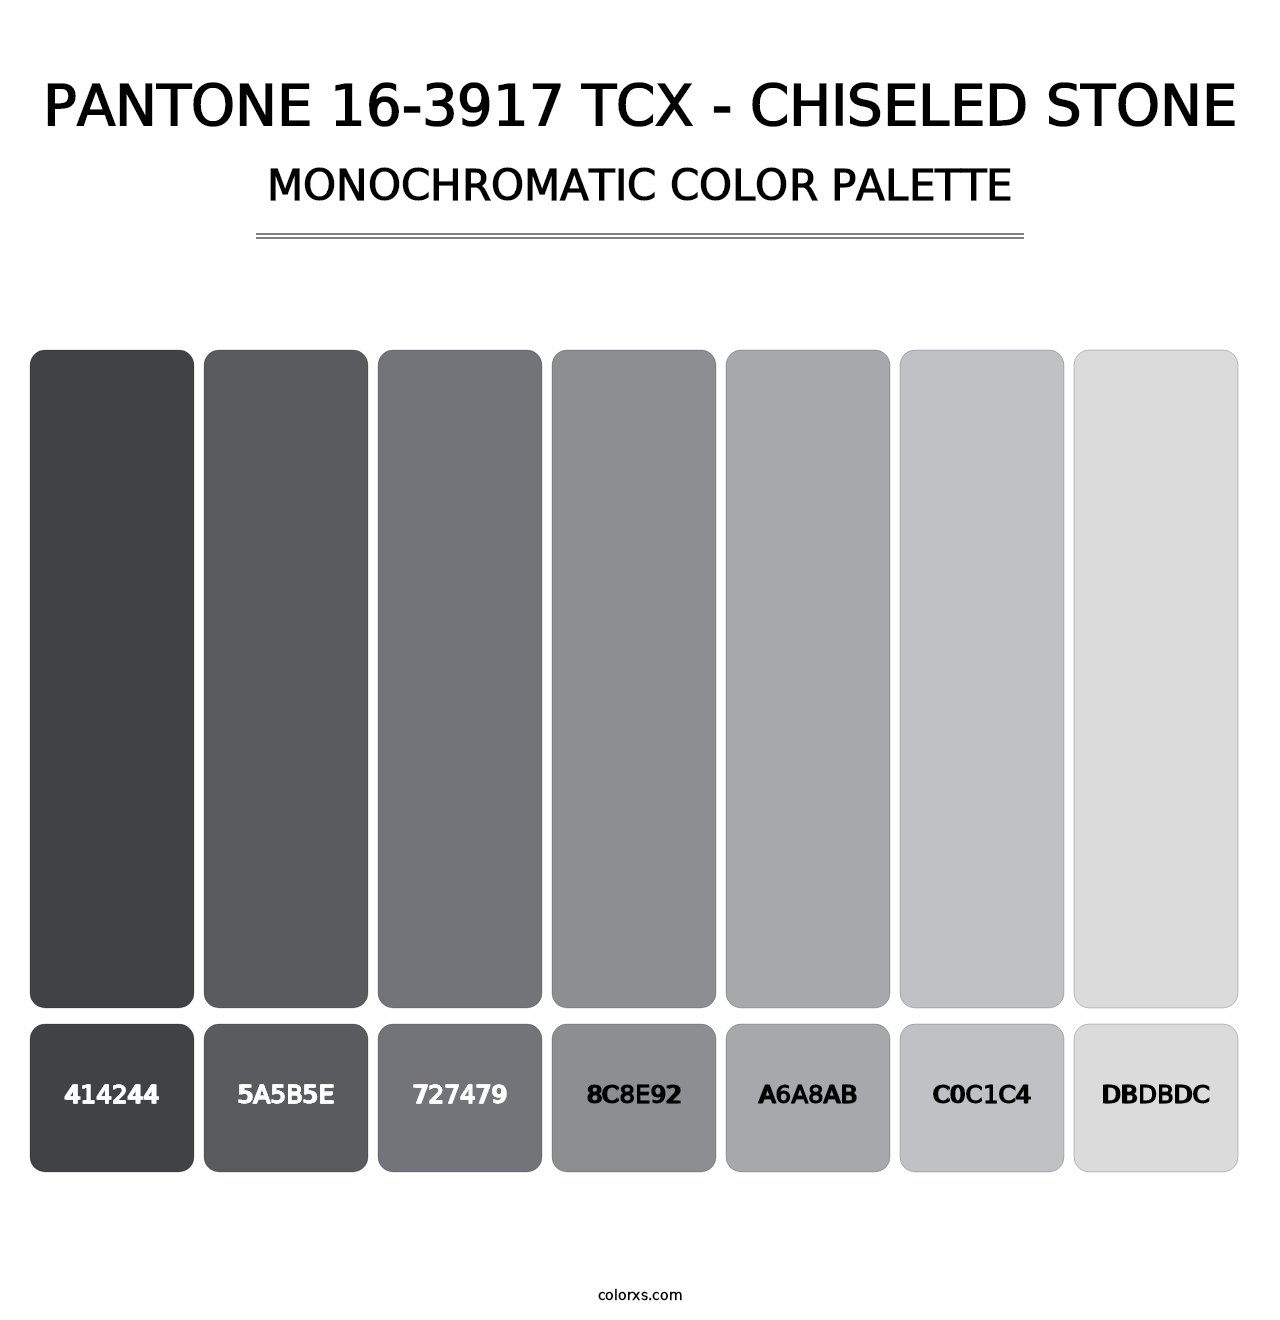 PANTONE 16-3917 TCX - Chiseled Stone - Monochromatic Color Palette